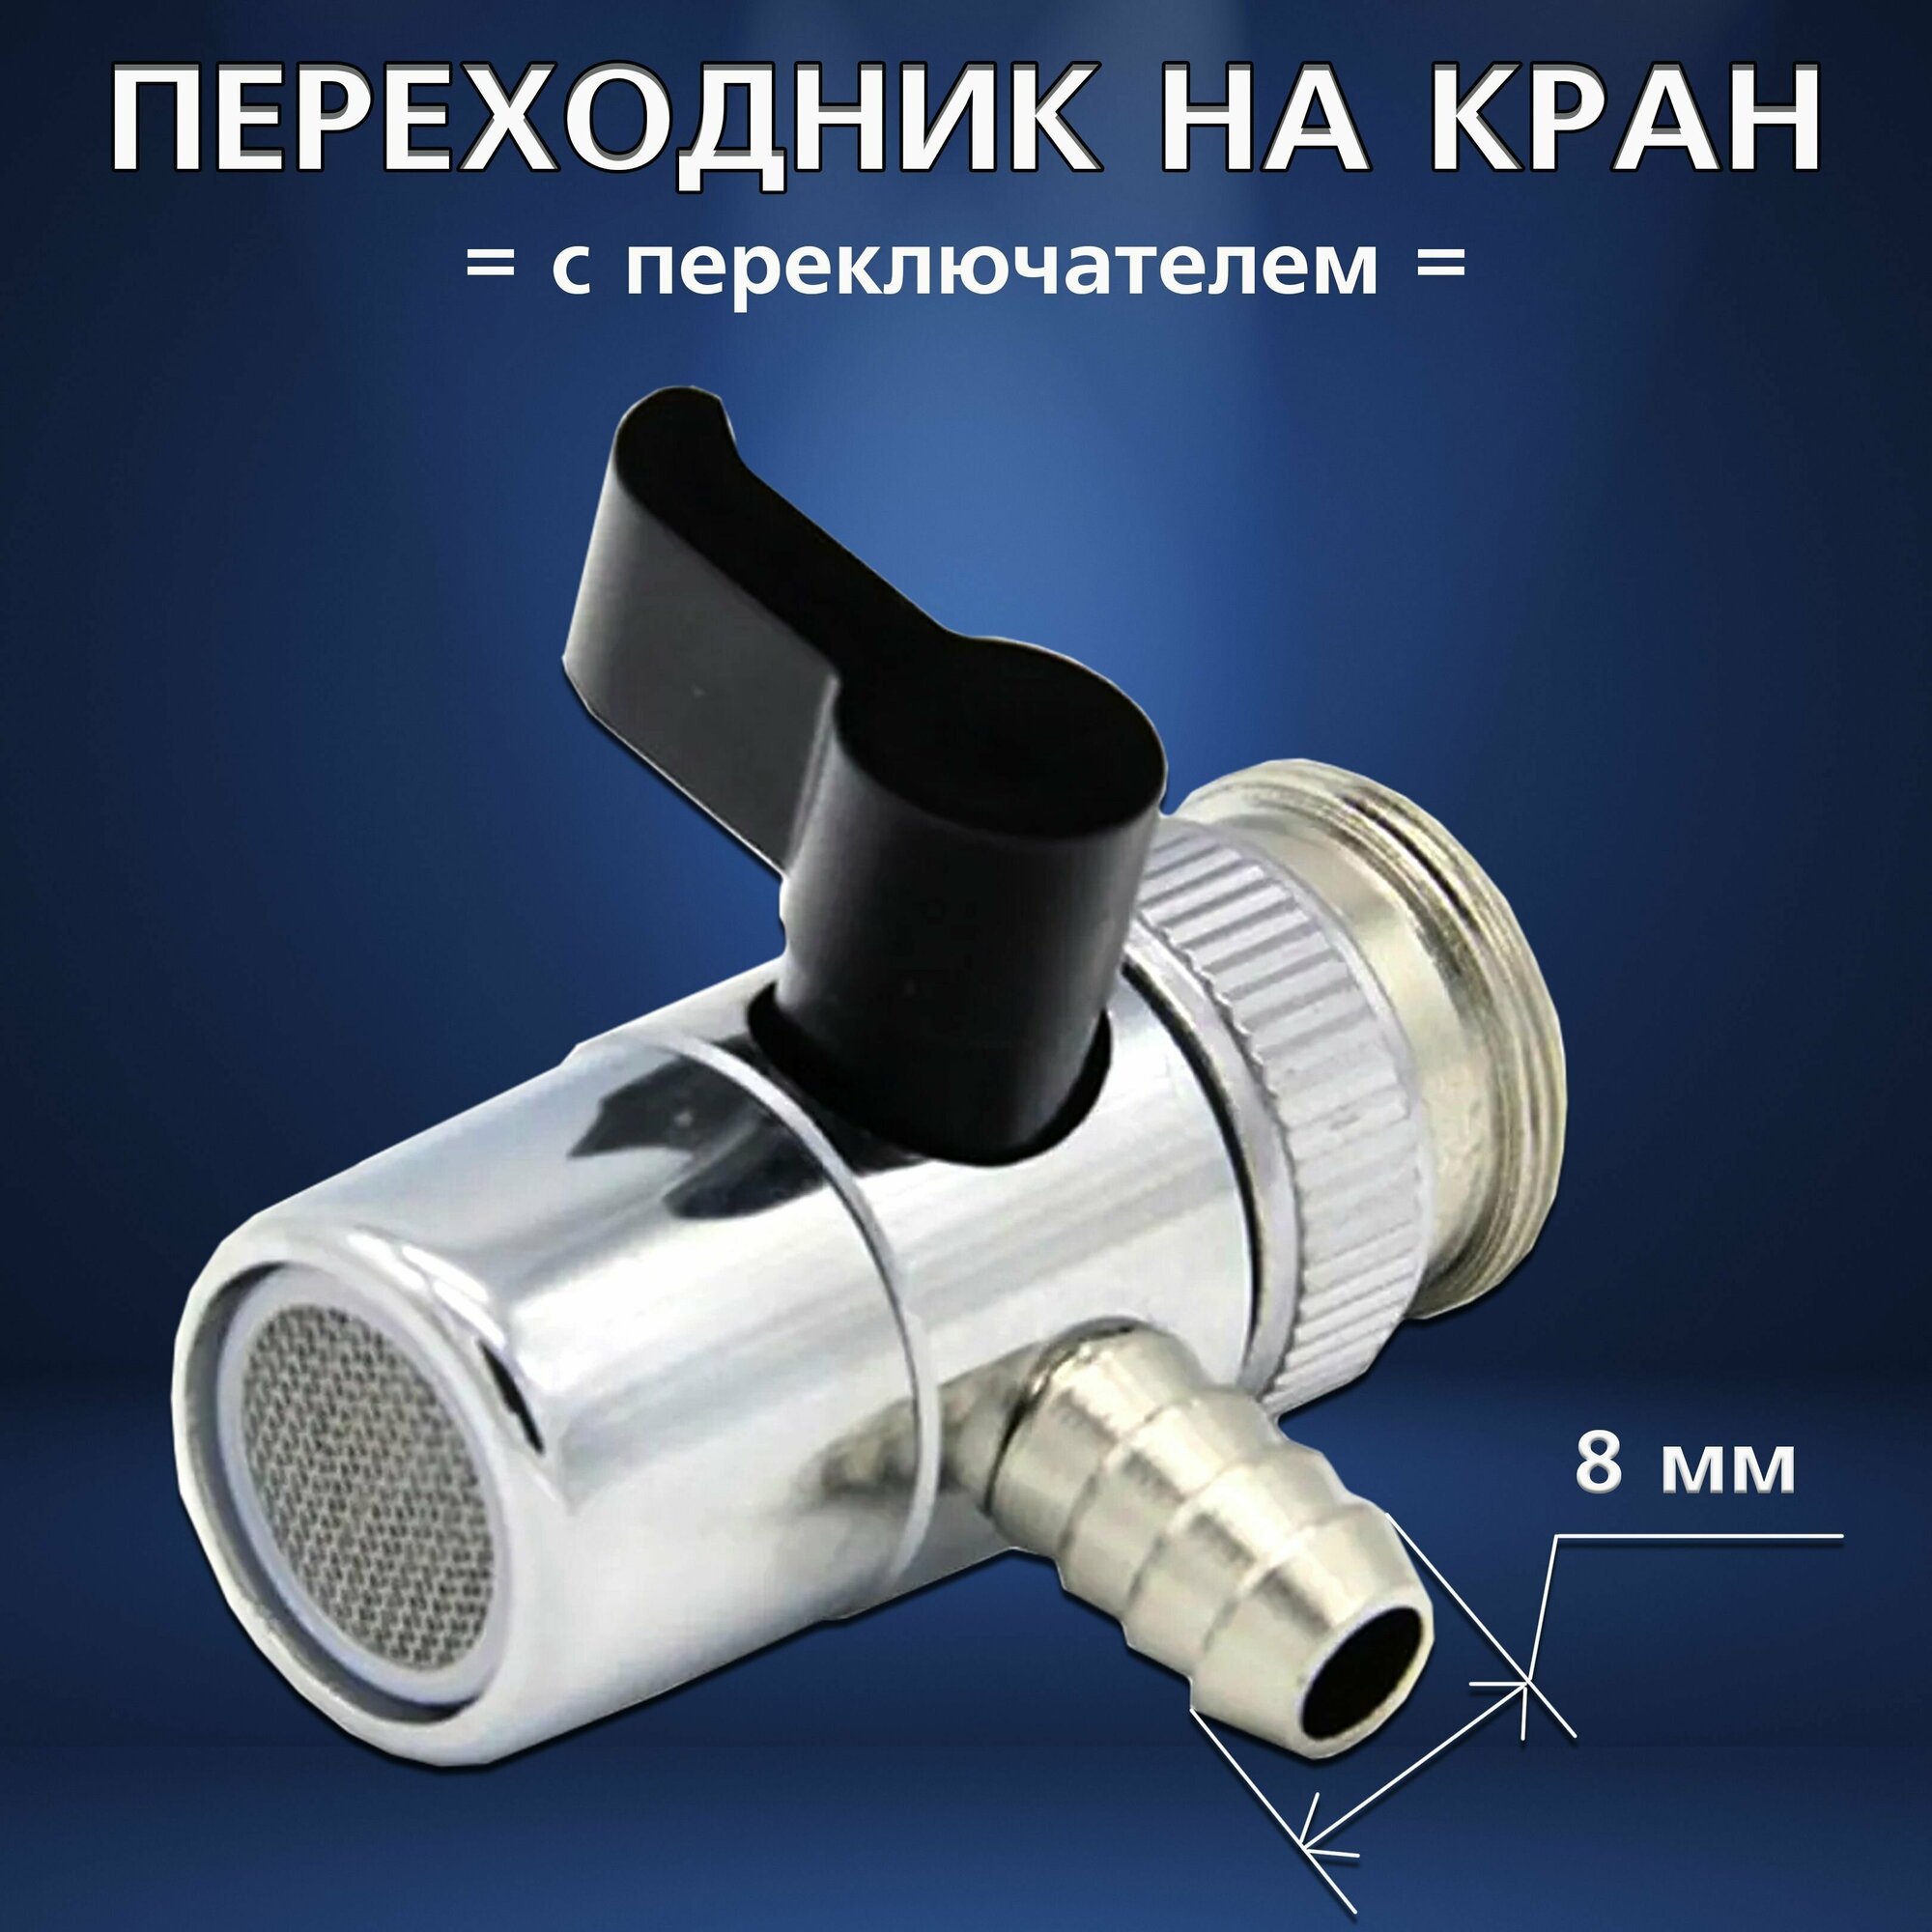 Переходник на кран от 6 до 12 мм с переключателем для смесителя и самогонного аппарата